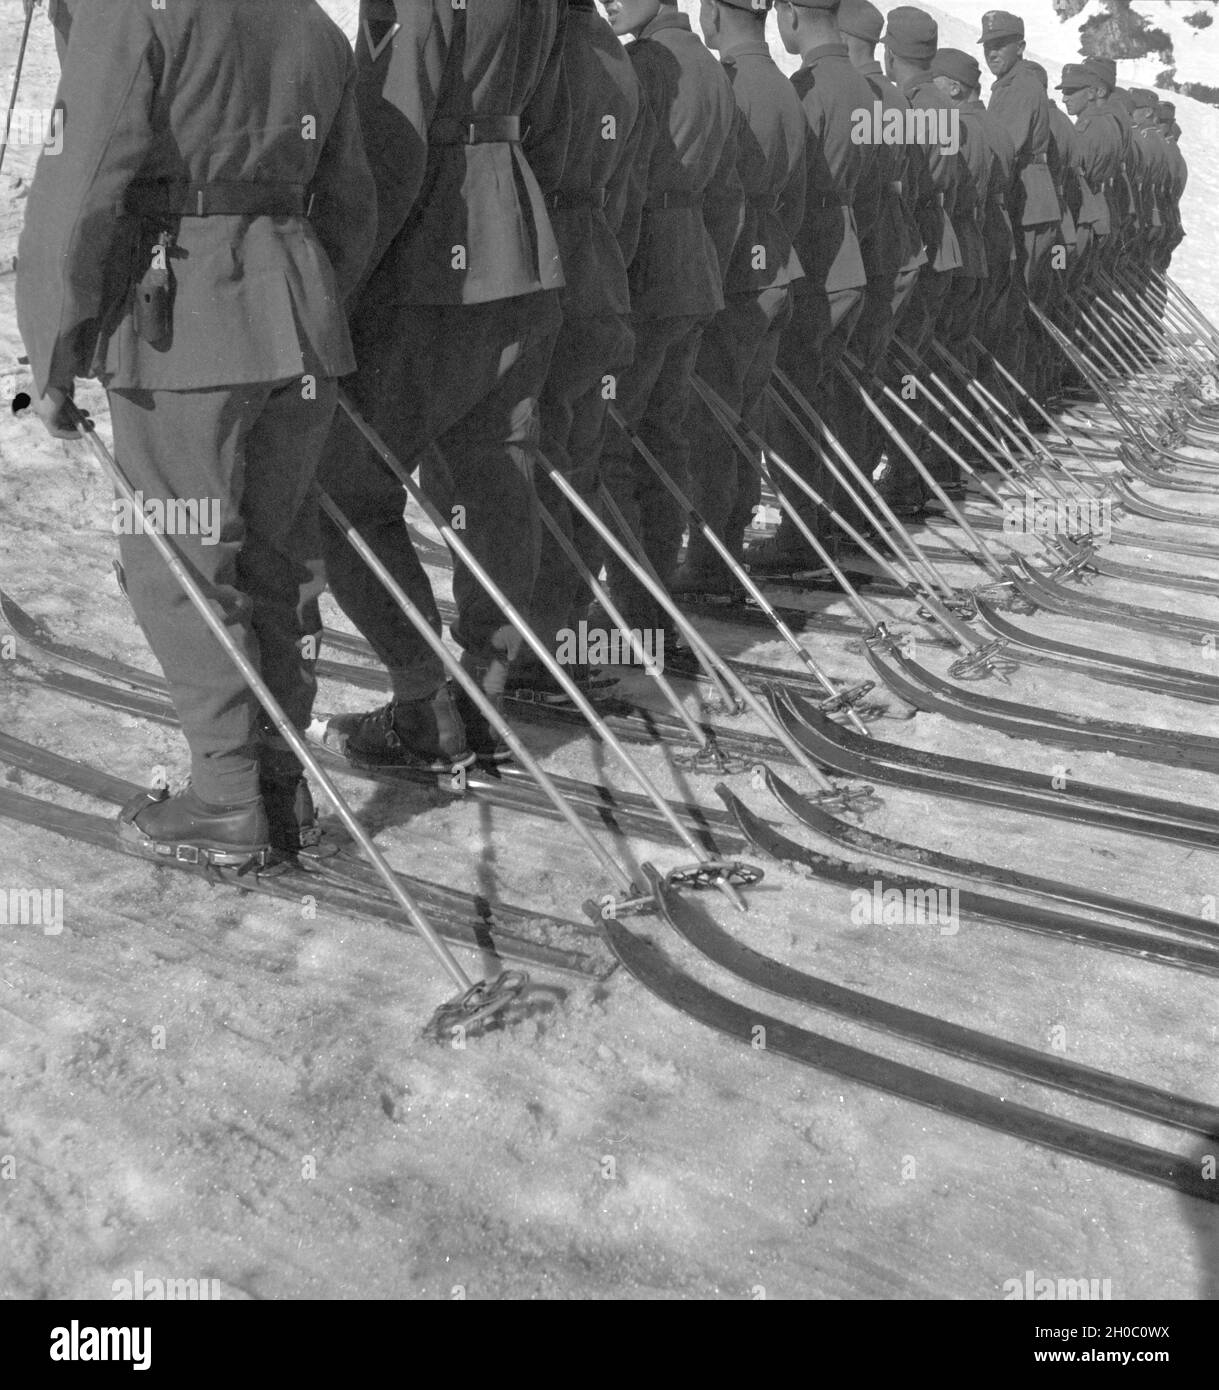 Gebirgsjäger in einem Skigebiet in Bayern, Deutsches Reich 1930er Jahre.The mountain infantry  in a Ski region in Bavaria, Germany 1930s. Stock Photo